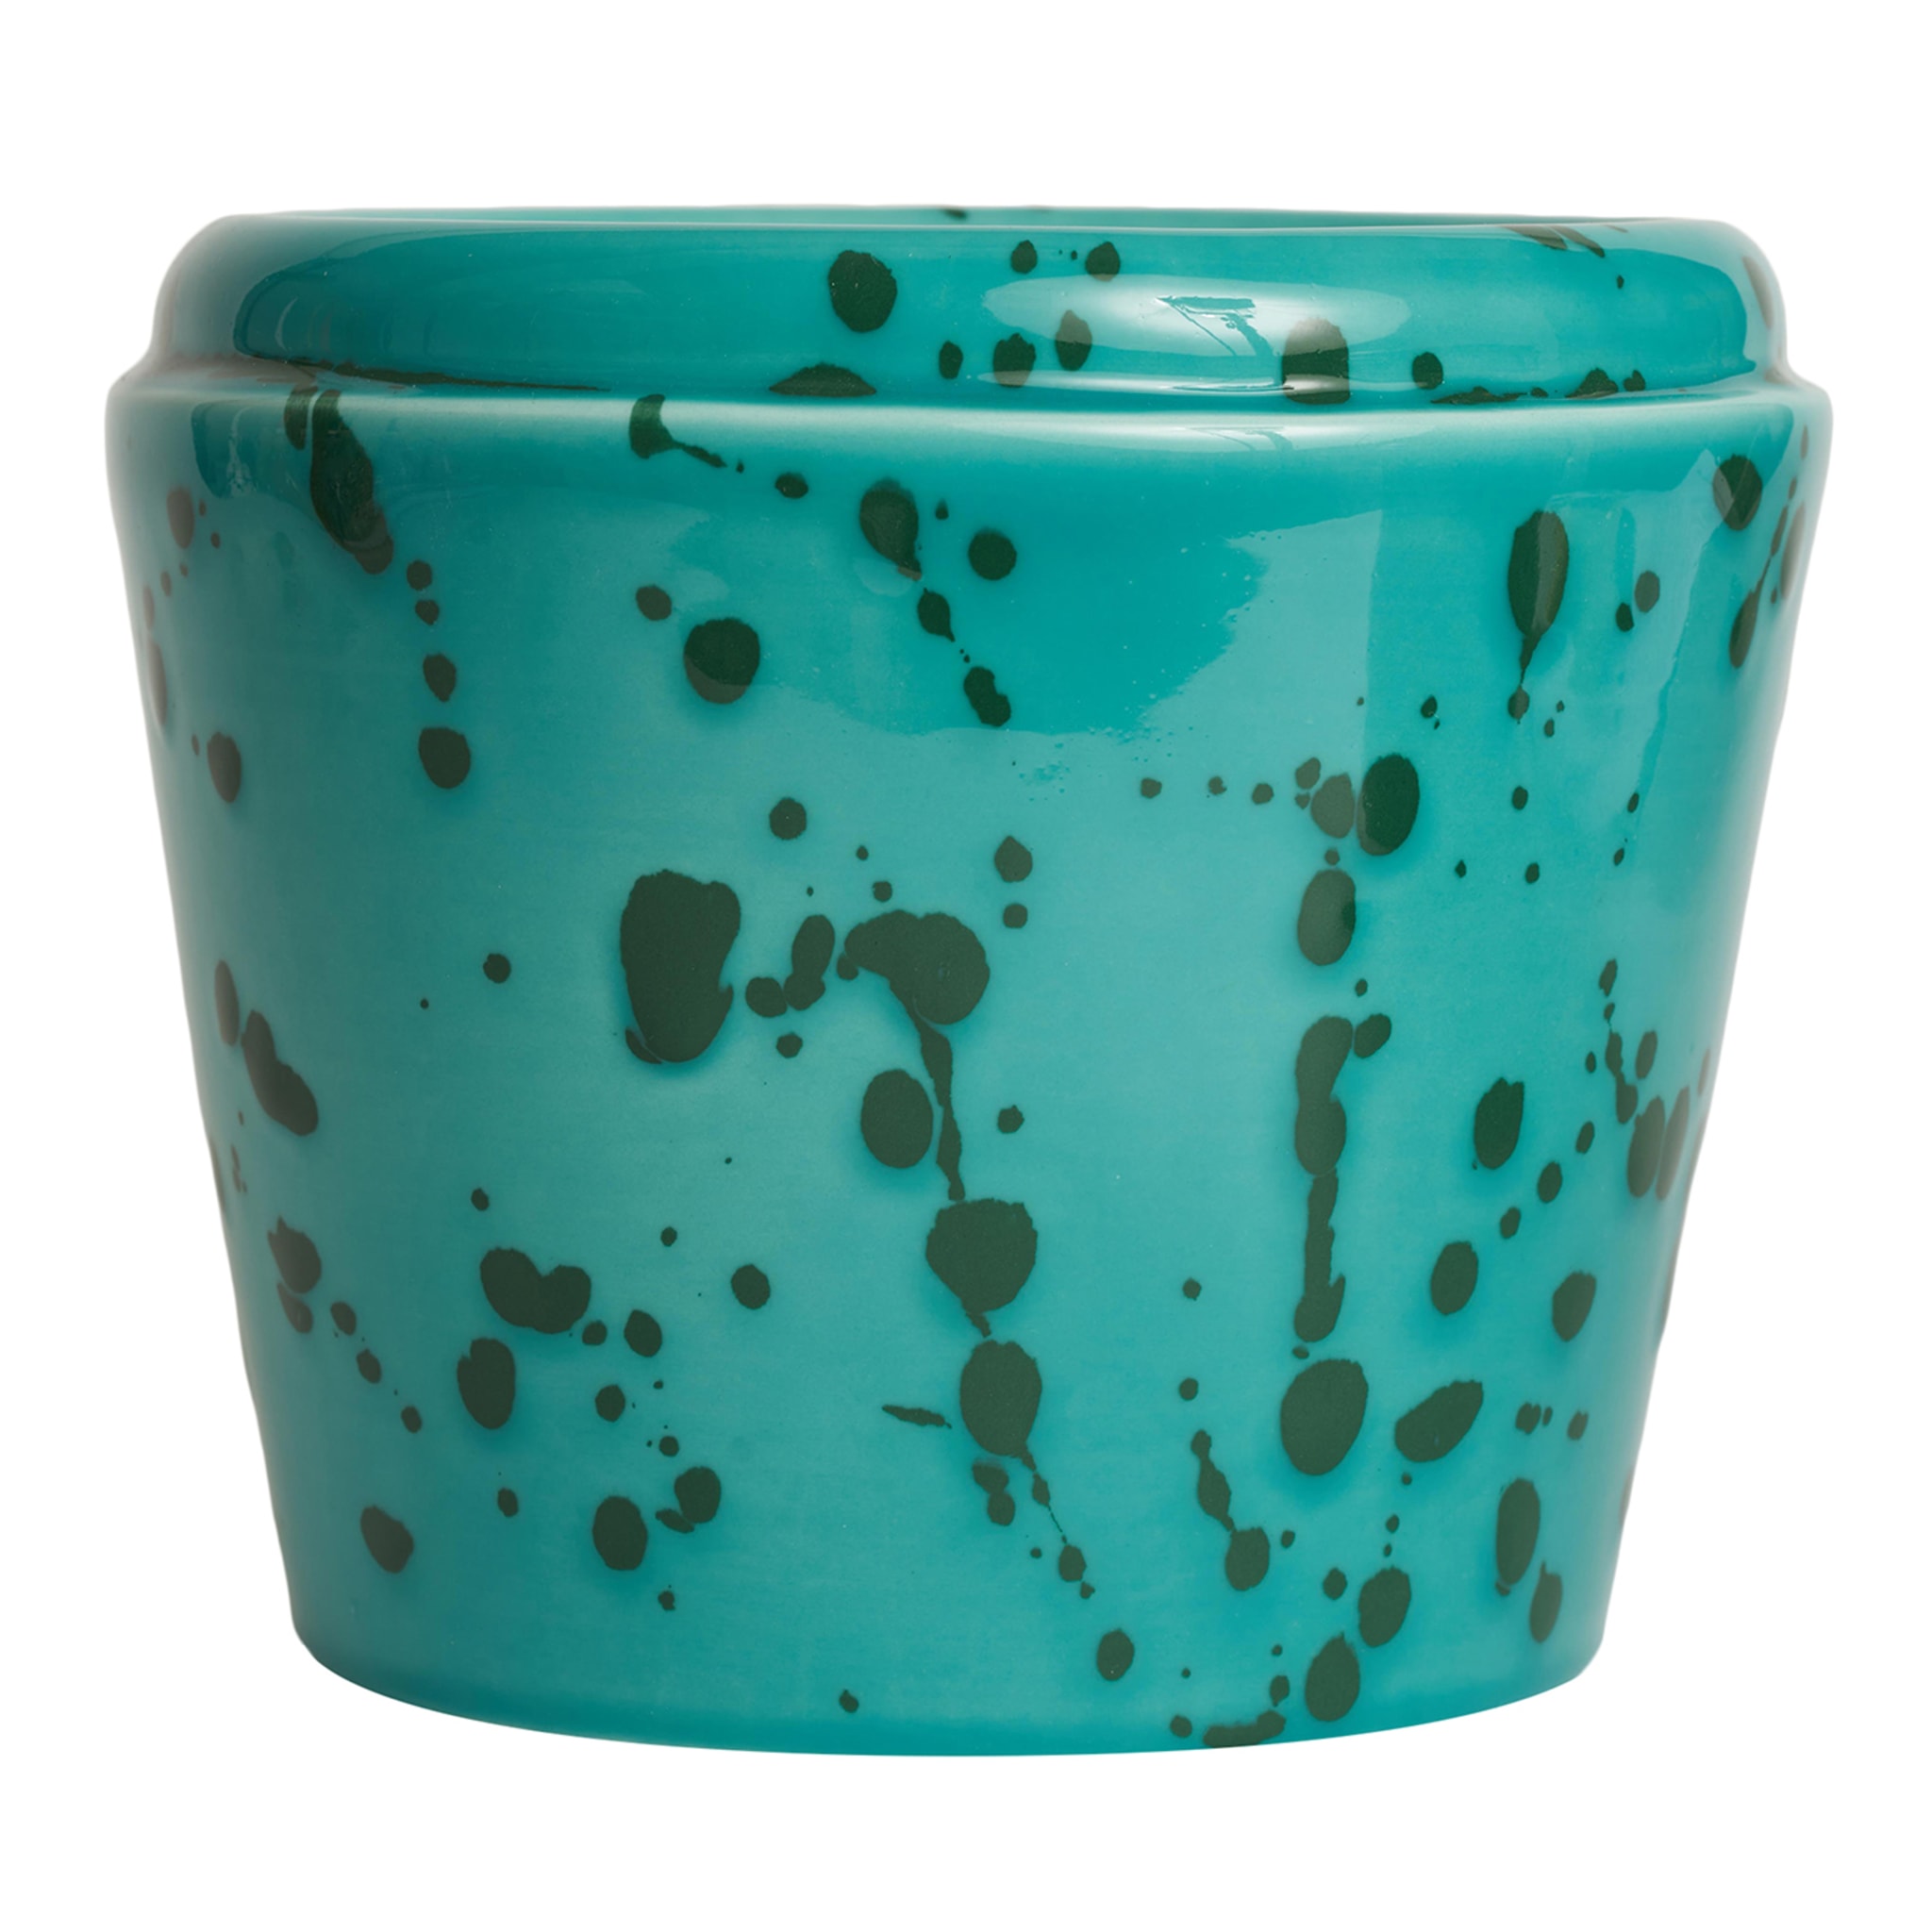  Aqua und Grün Keramik Übertopf Vase - Hauptansicht